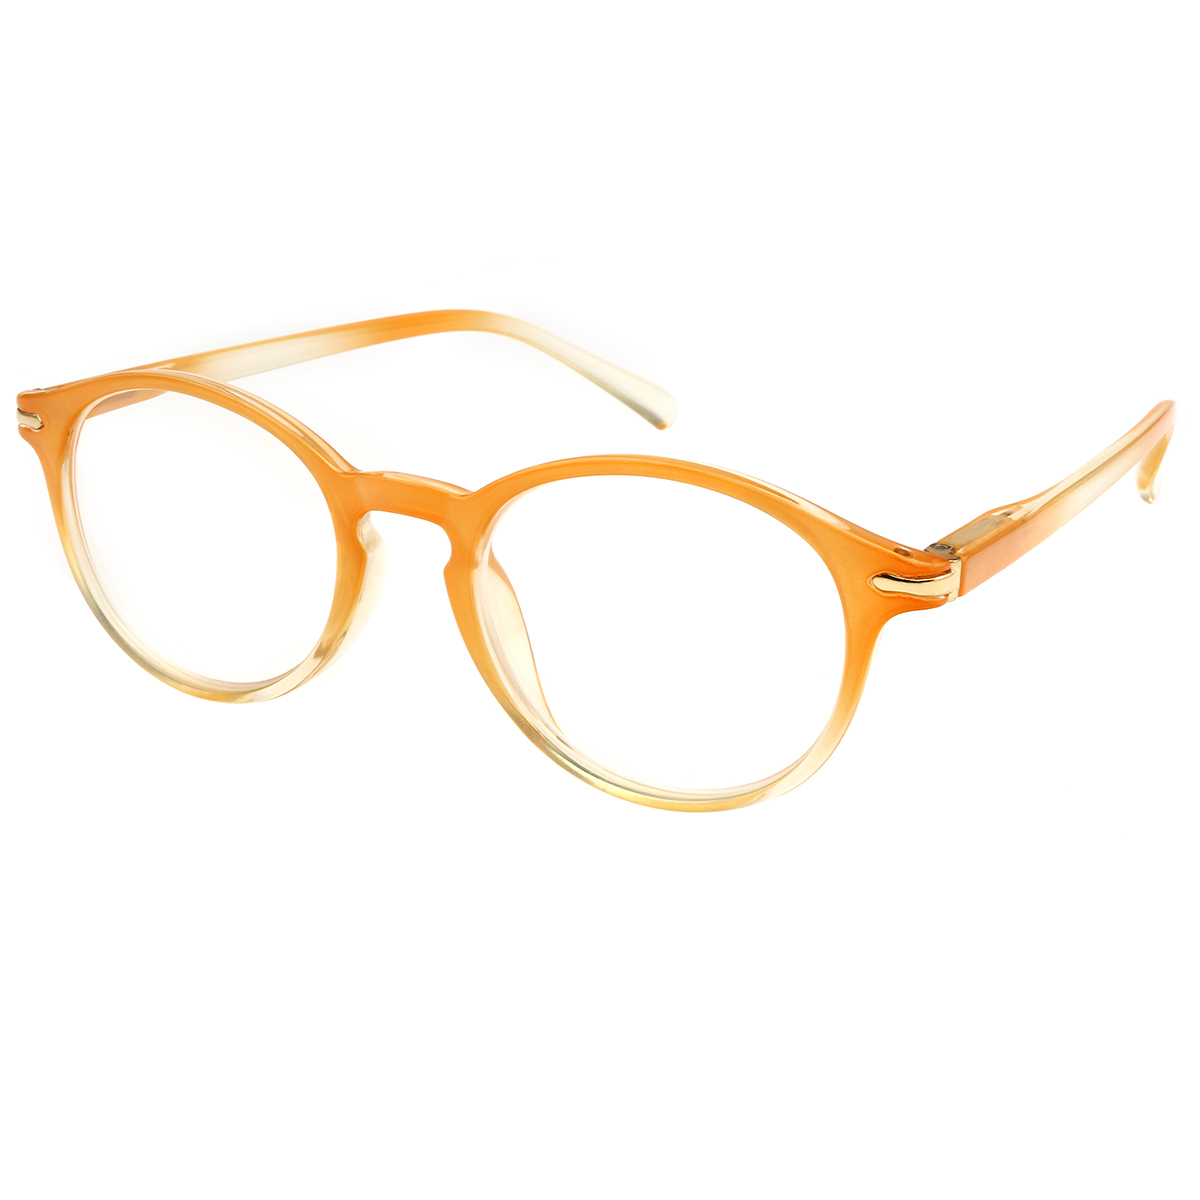 Gallaecia - Oval Orange Reading Glasses for Women